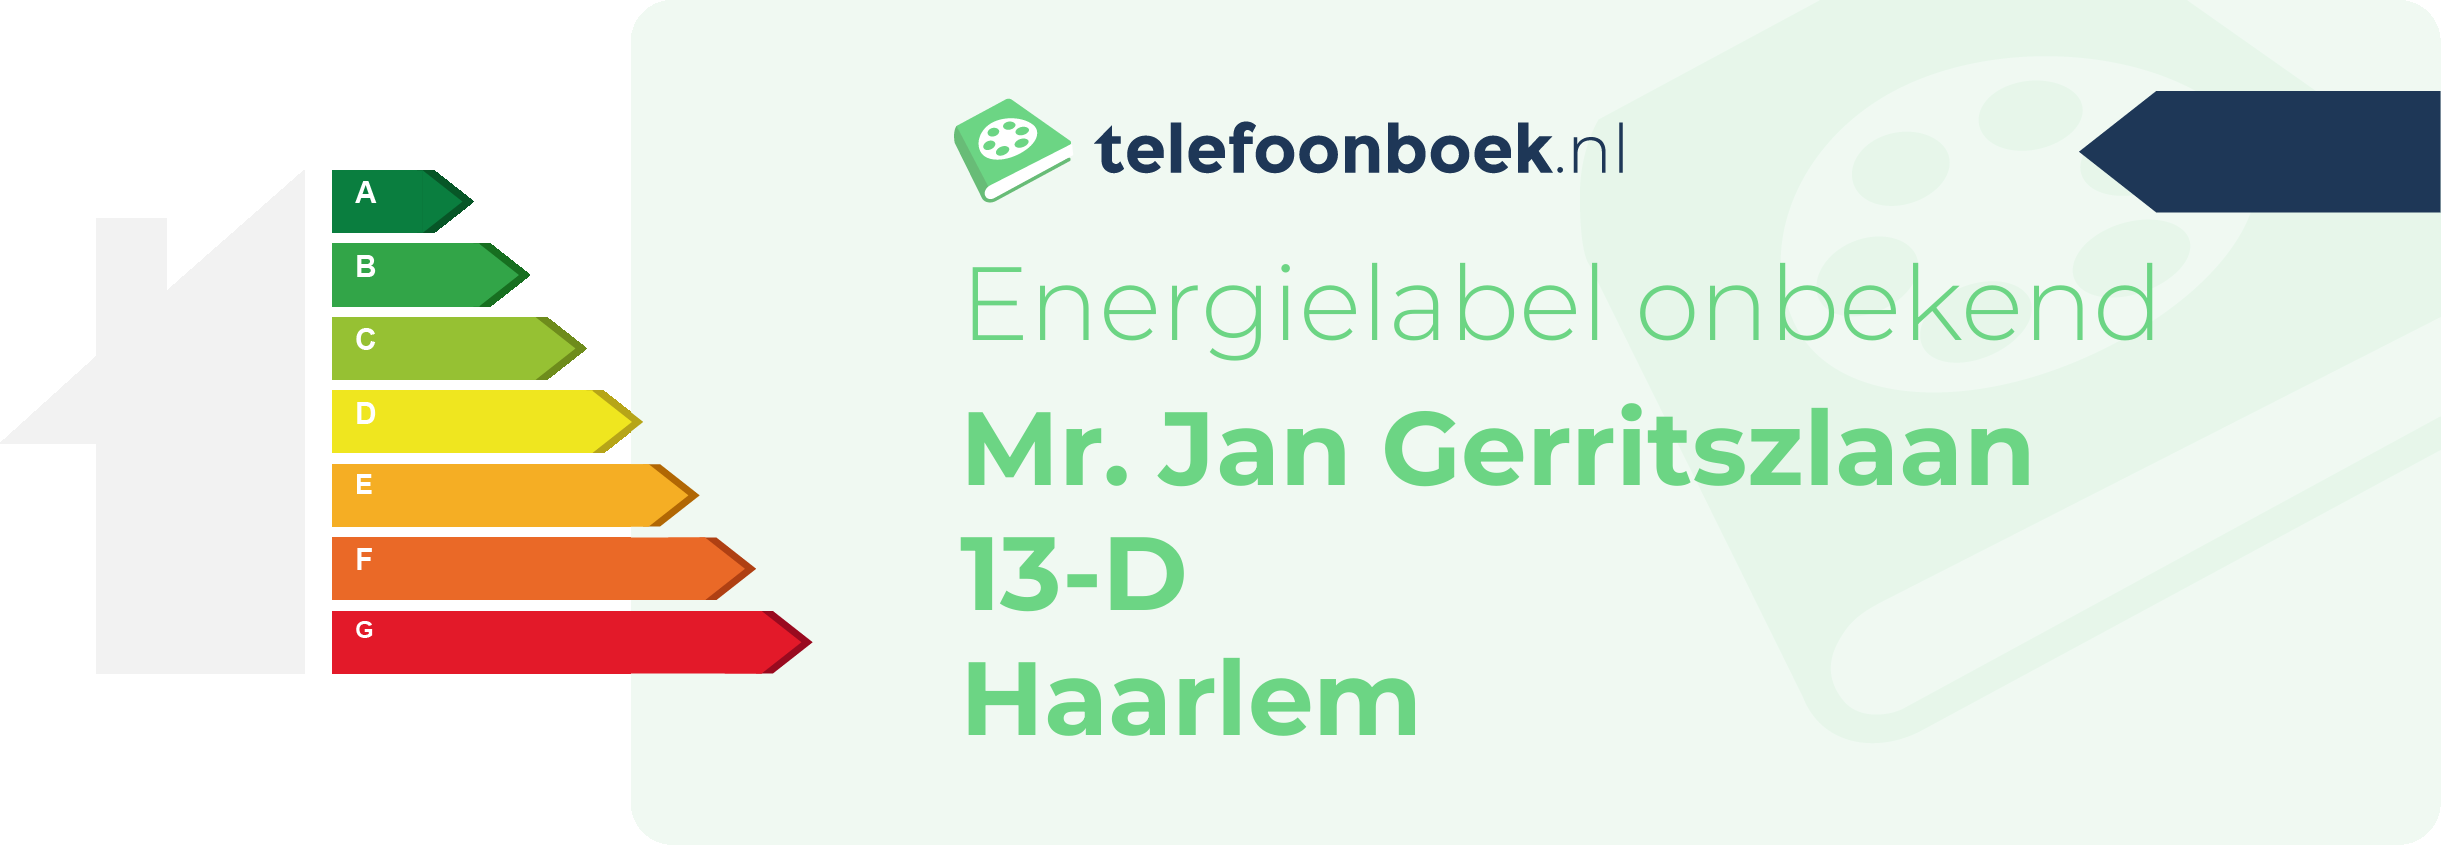 Energielabel Mr. Jan Gerritszlaan 13-D Haarlem